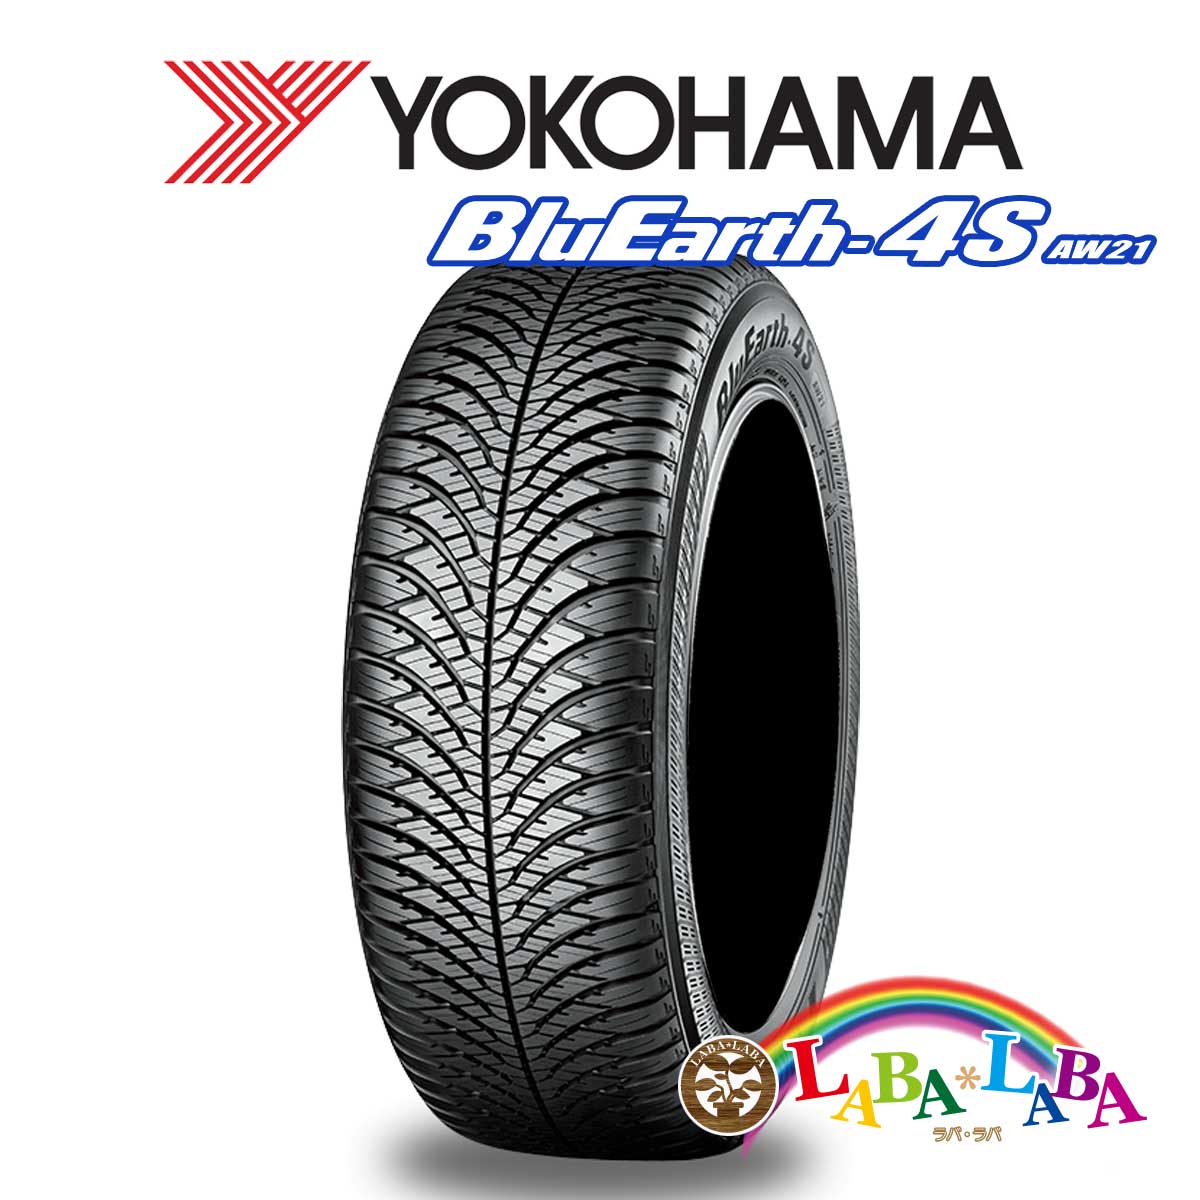 ２本以上送料無料 国産タイヤ オールシーズン 新品 タイヤのみ YOKOHAMA ヨコハマ セットアップ 65R15 185 AW21 88H 予約 ブルーアース BluEarth-4S